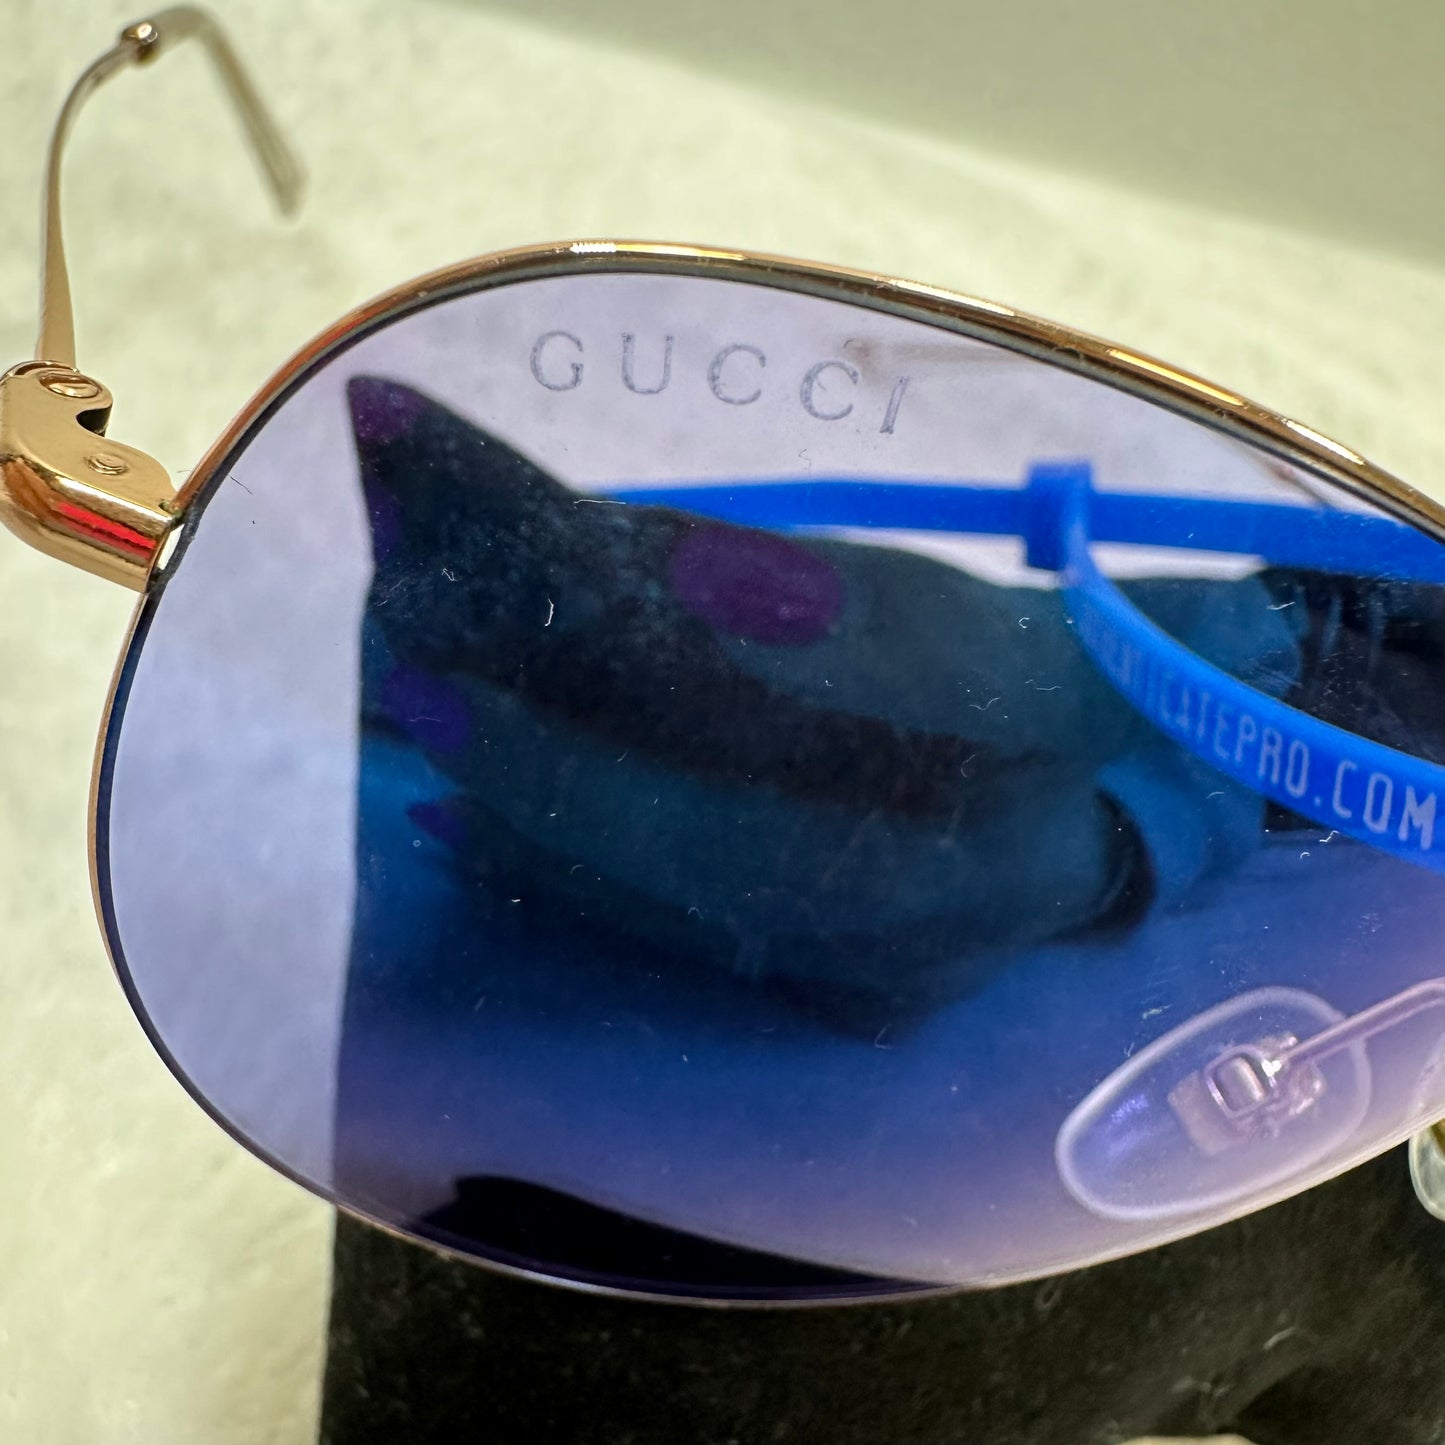 Sunglasses By Gucci